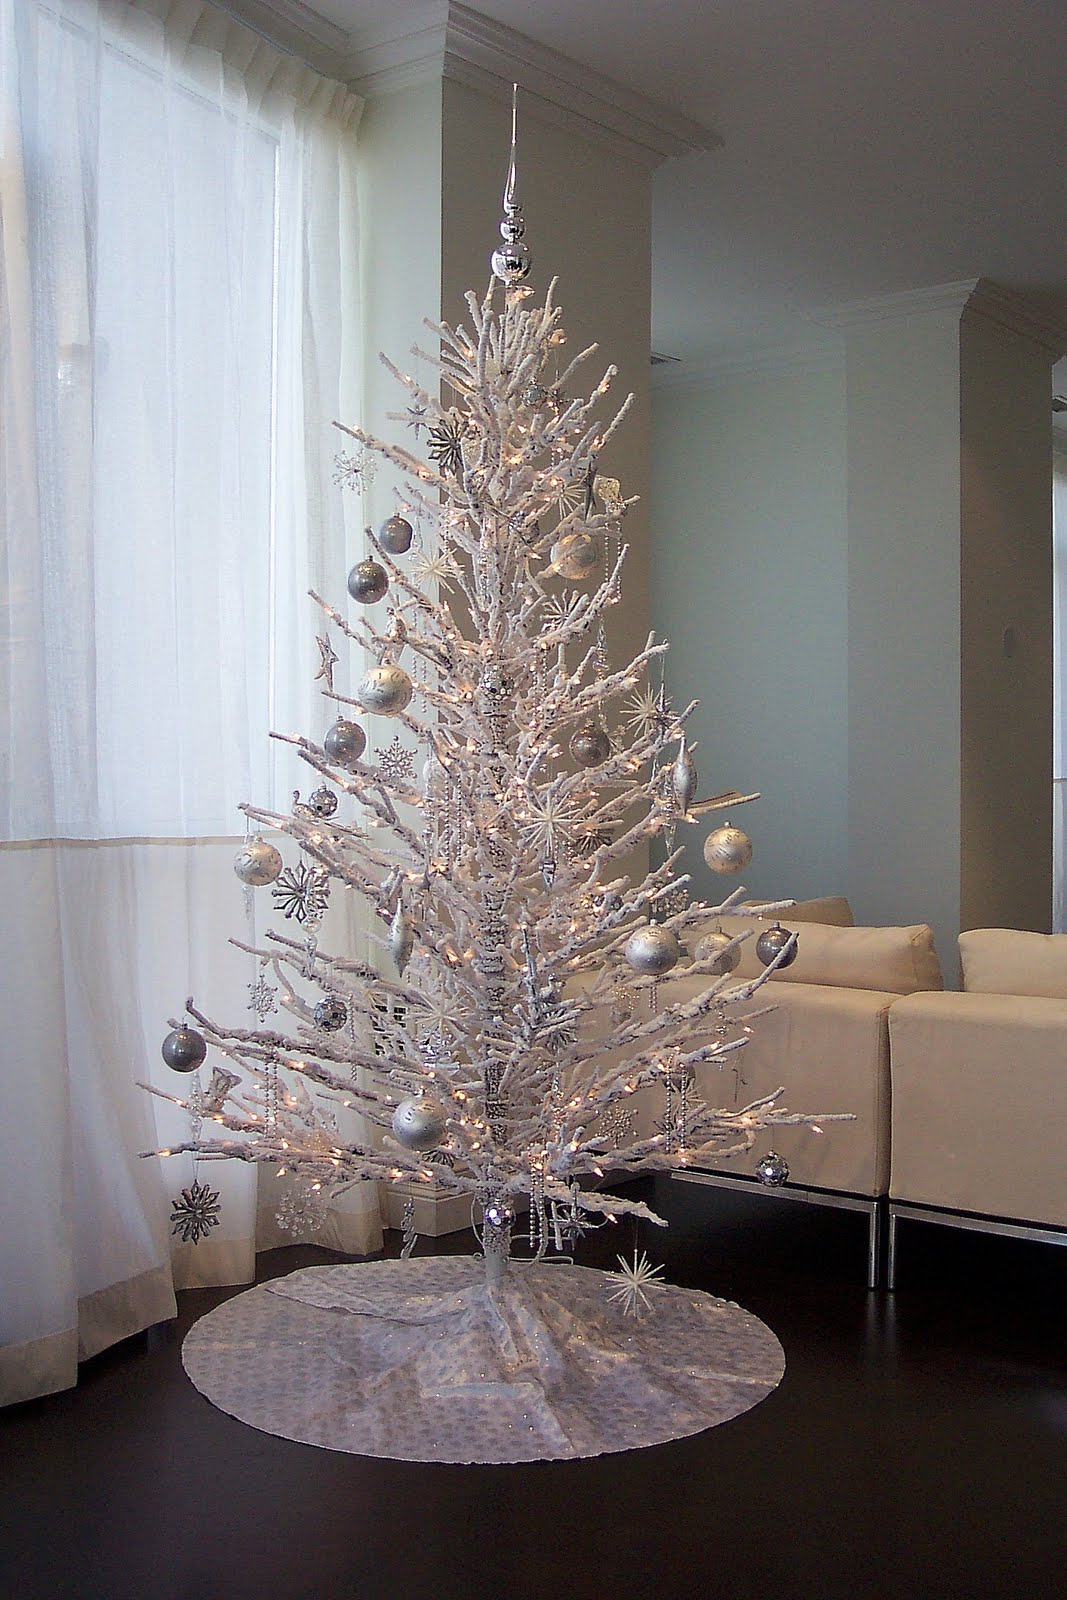 http://4.bp.blogspot.com/-MglifBWA6Tc/TvTx0Vq8ueI/AAAAAAAAATE/lqEOfKlYDN0/s1600/8_Christmas-tree-decorating-Christmas-tree-decorating-ideas-best-Christmas-tree-decorating-ideas.jpg